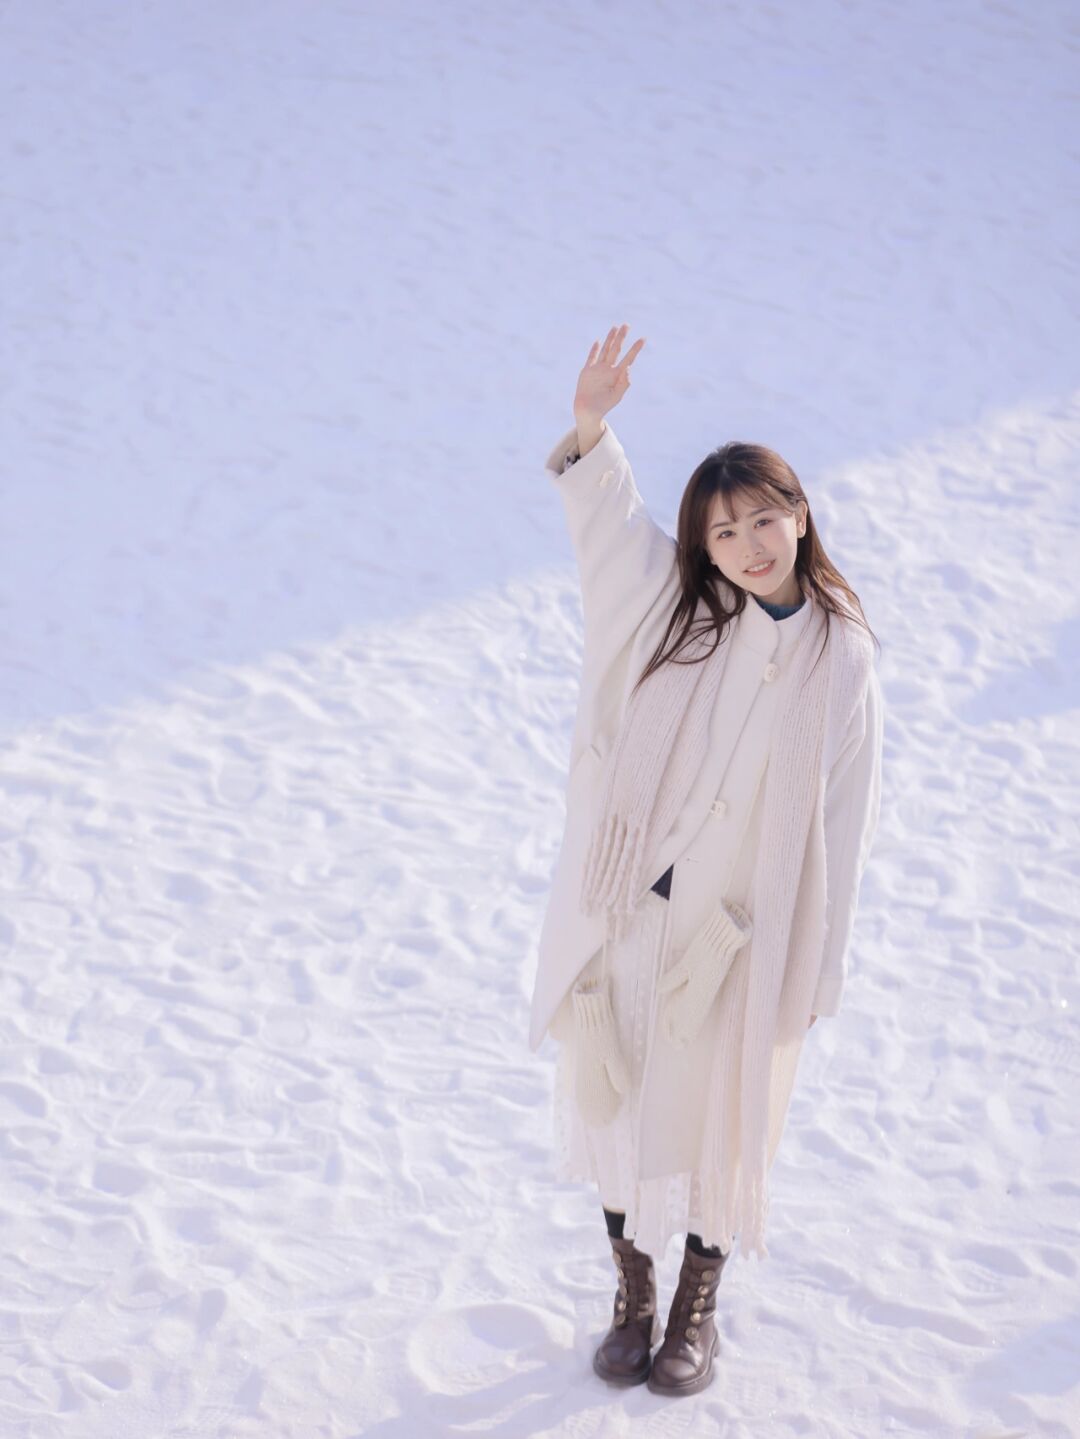 冬装也可以很漂亮,雪景中的女孩穿白色呢子大衣,搭配围巾好清纯